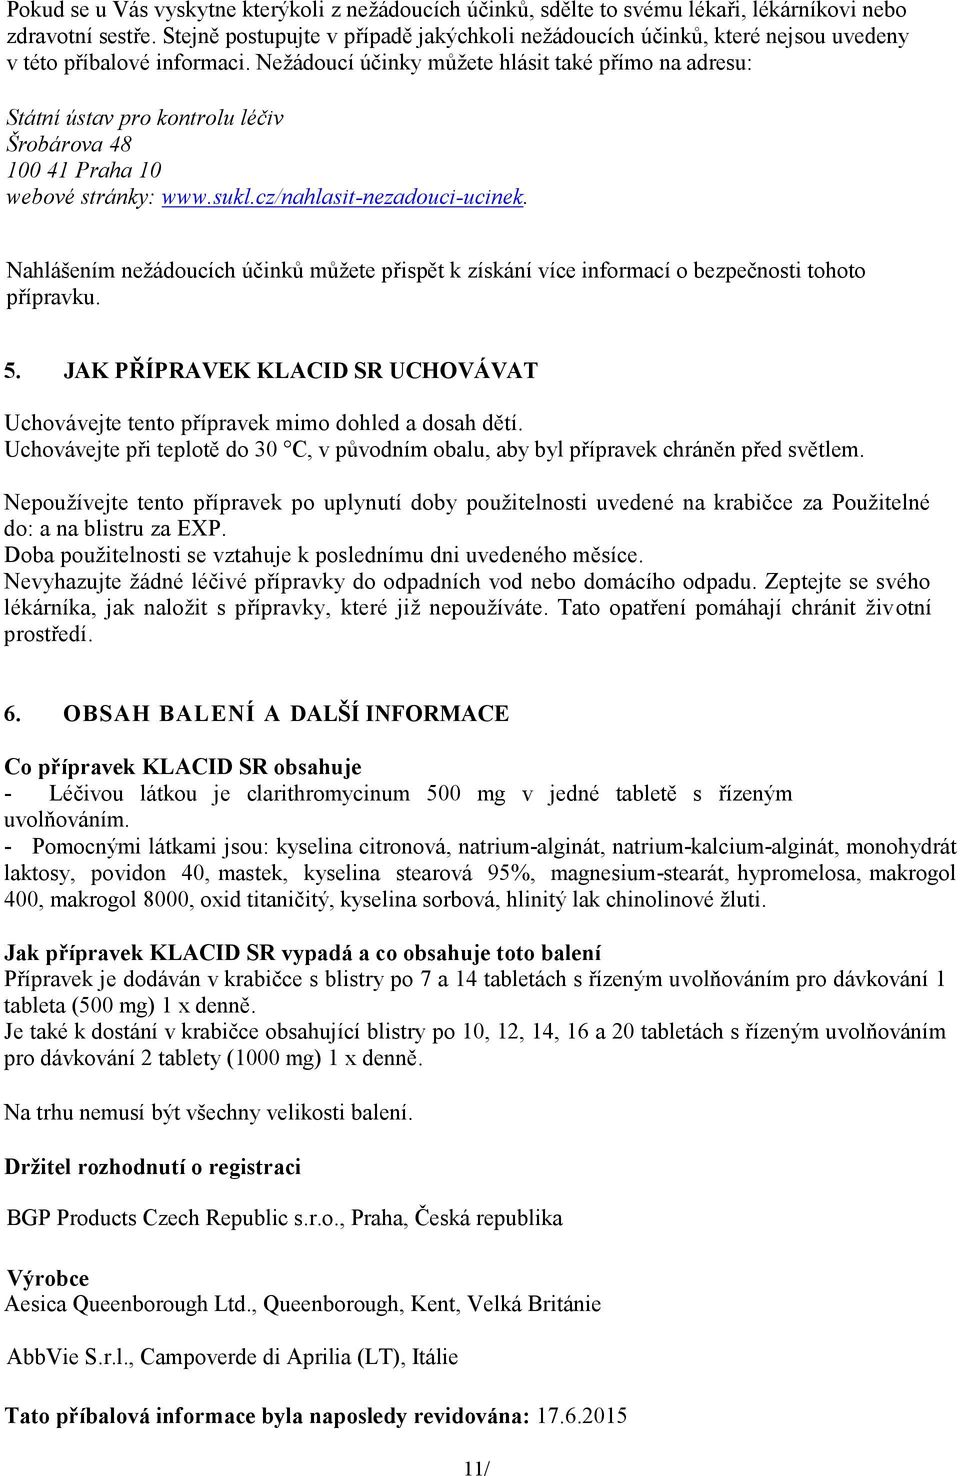 Nežádoucí účinky můžete hlásit také přímo na adresu: Státní ústav pro kontrolu léčiv Šrobárova 48 100 41 Praha 10 webové stránky: www.sukl.cz/nahlasit-nezadouci-ucinek.